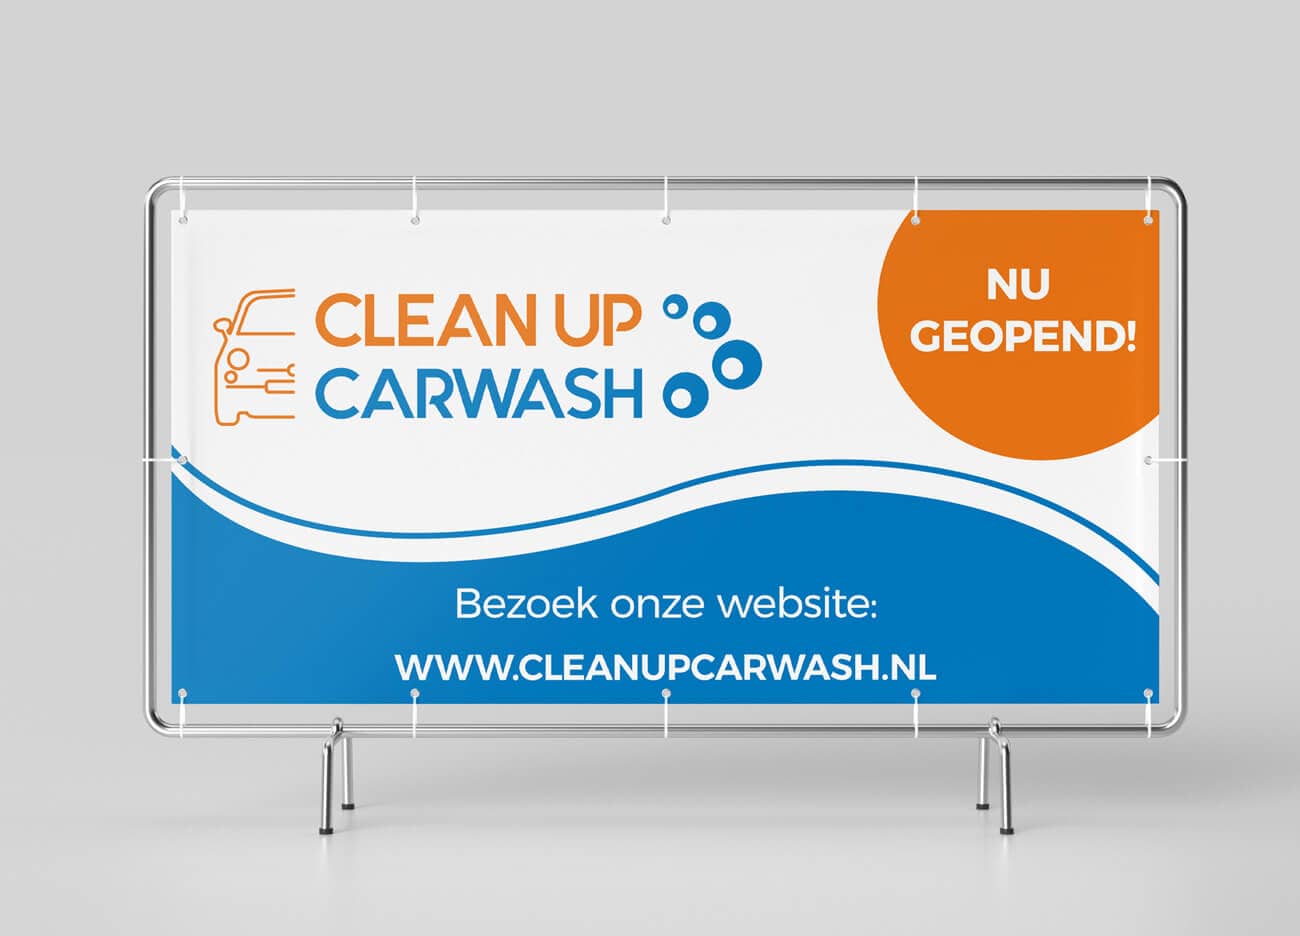 Carwash signage